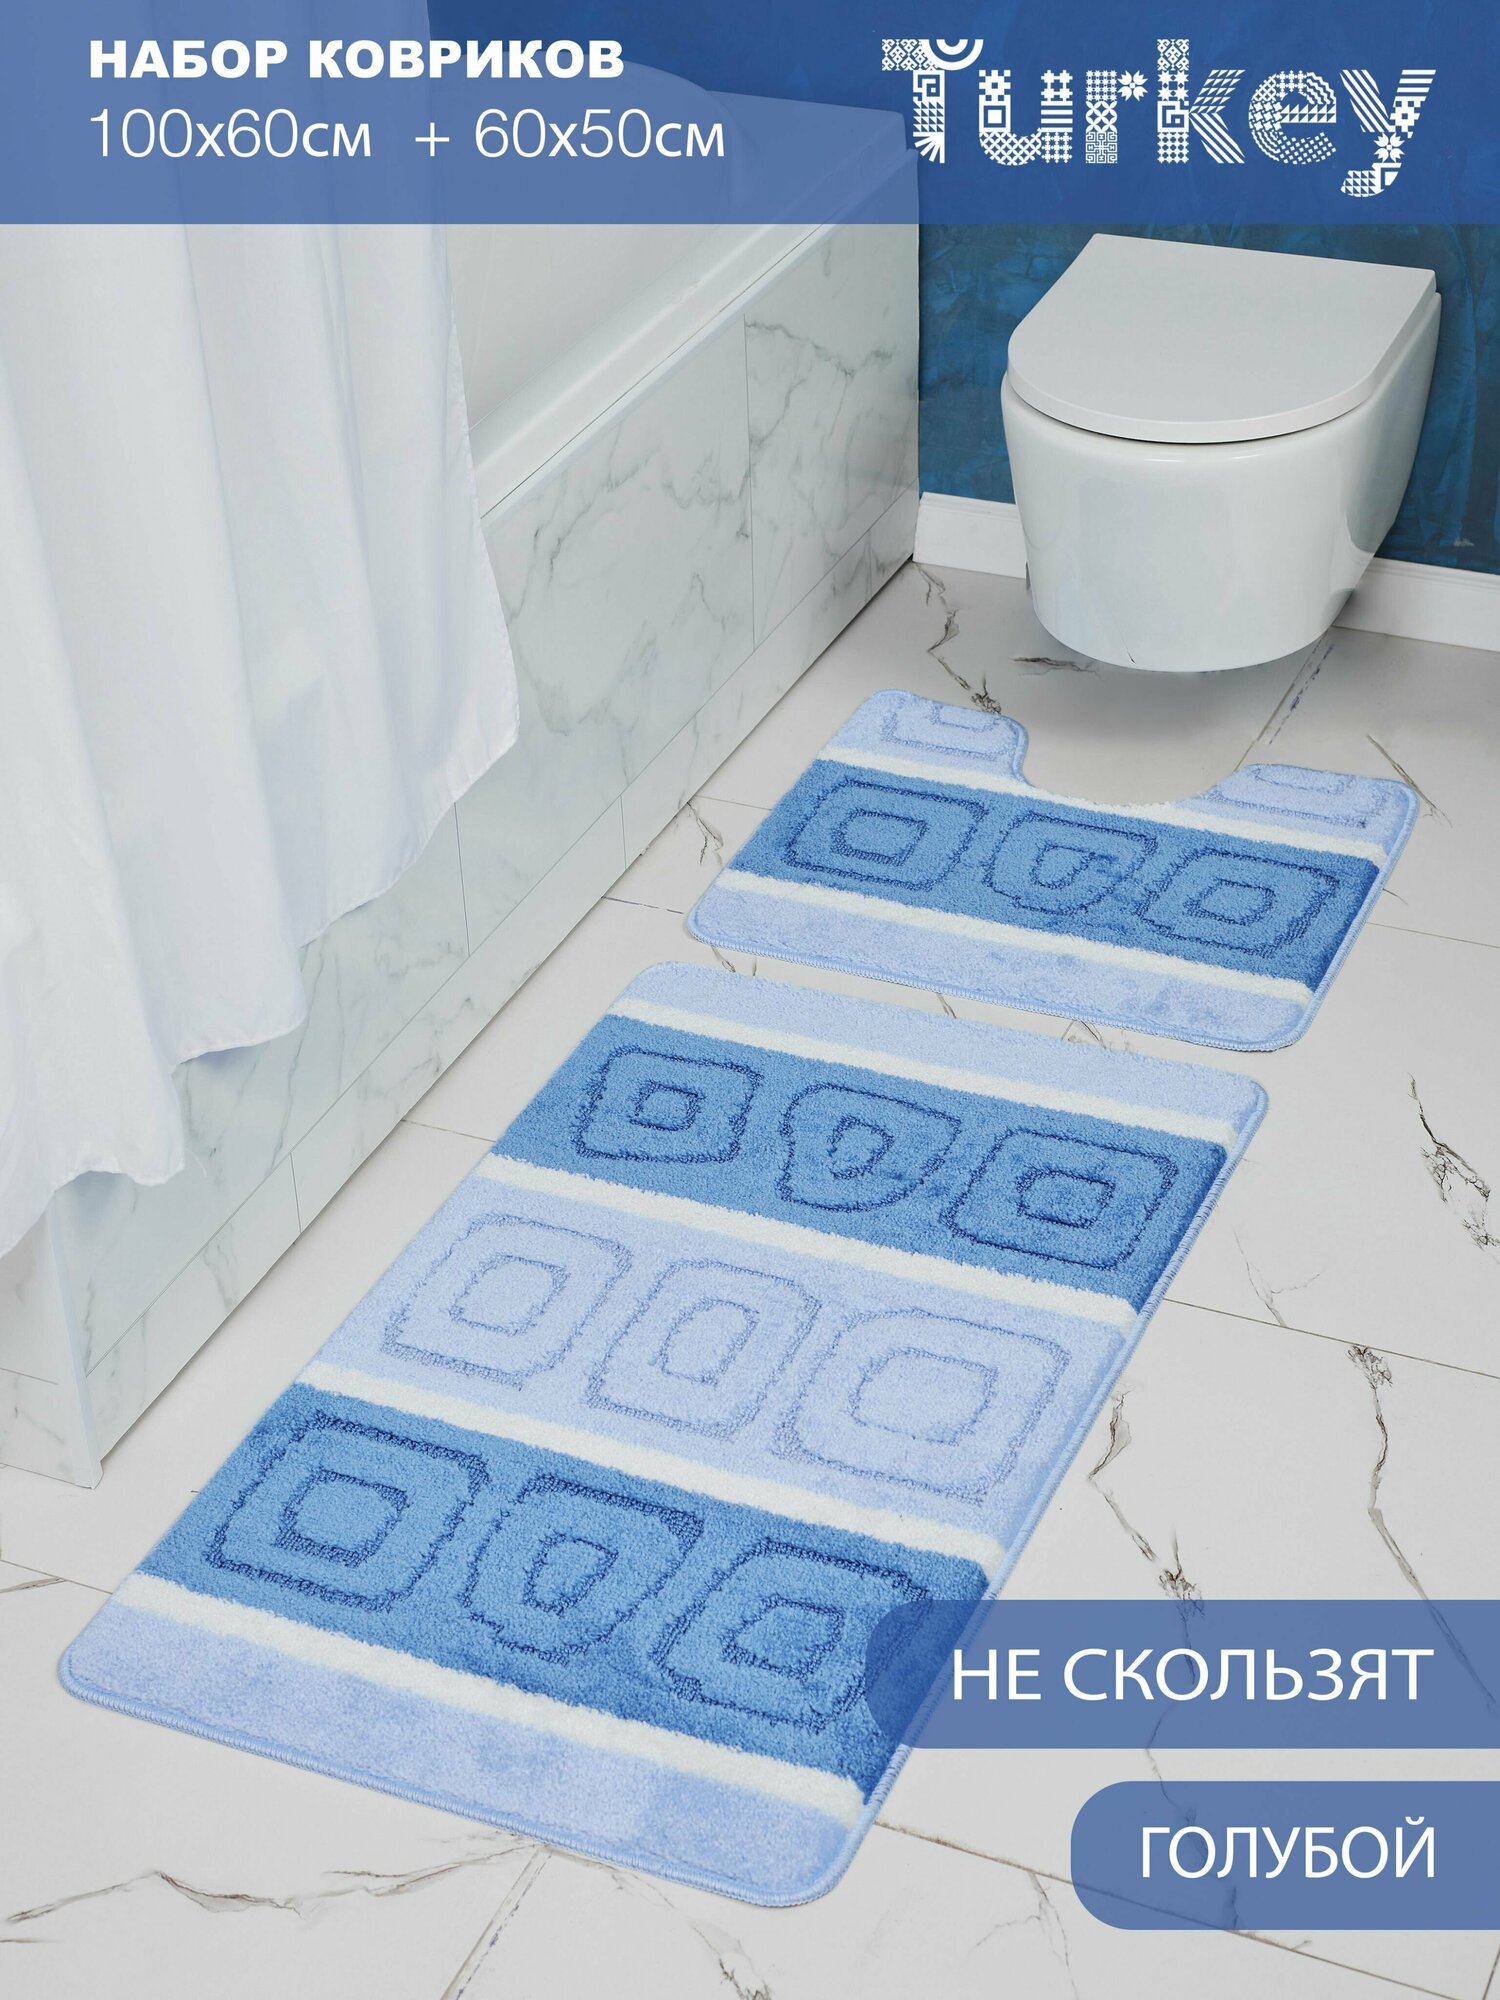 Набор противоскользящих ковриков для ванной и туалета, голубой, Solin 100*60+50*60, 2 шт.